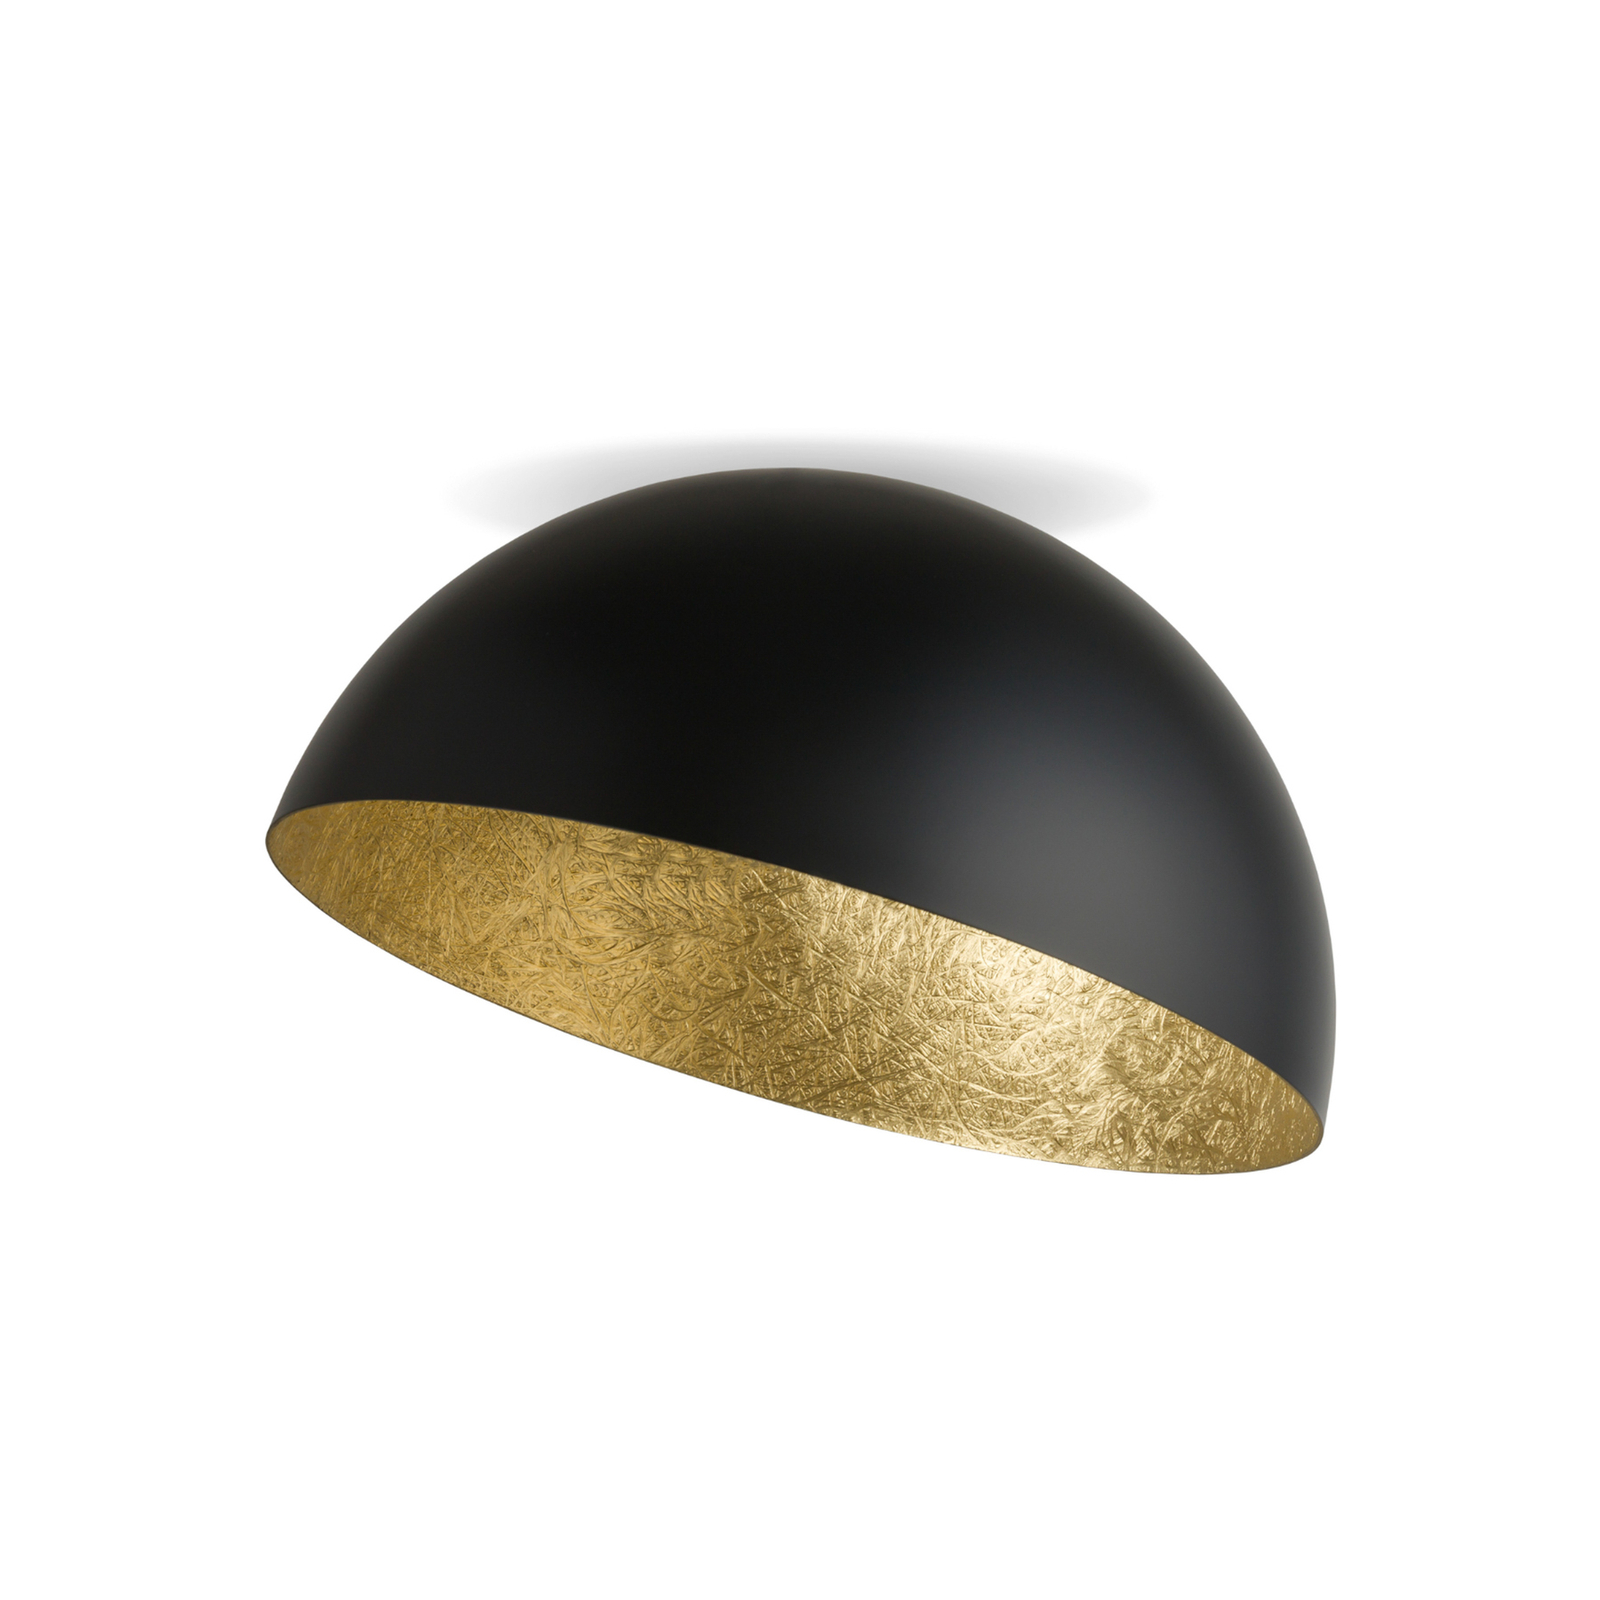 Lampa sufitowa Sfera, Ø 50cm, czarna/złota